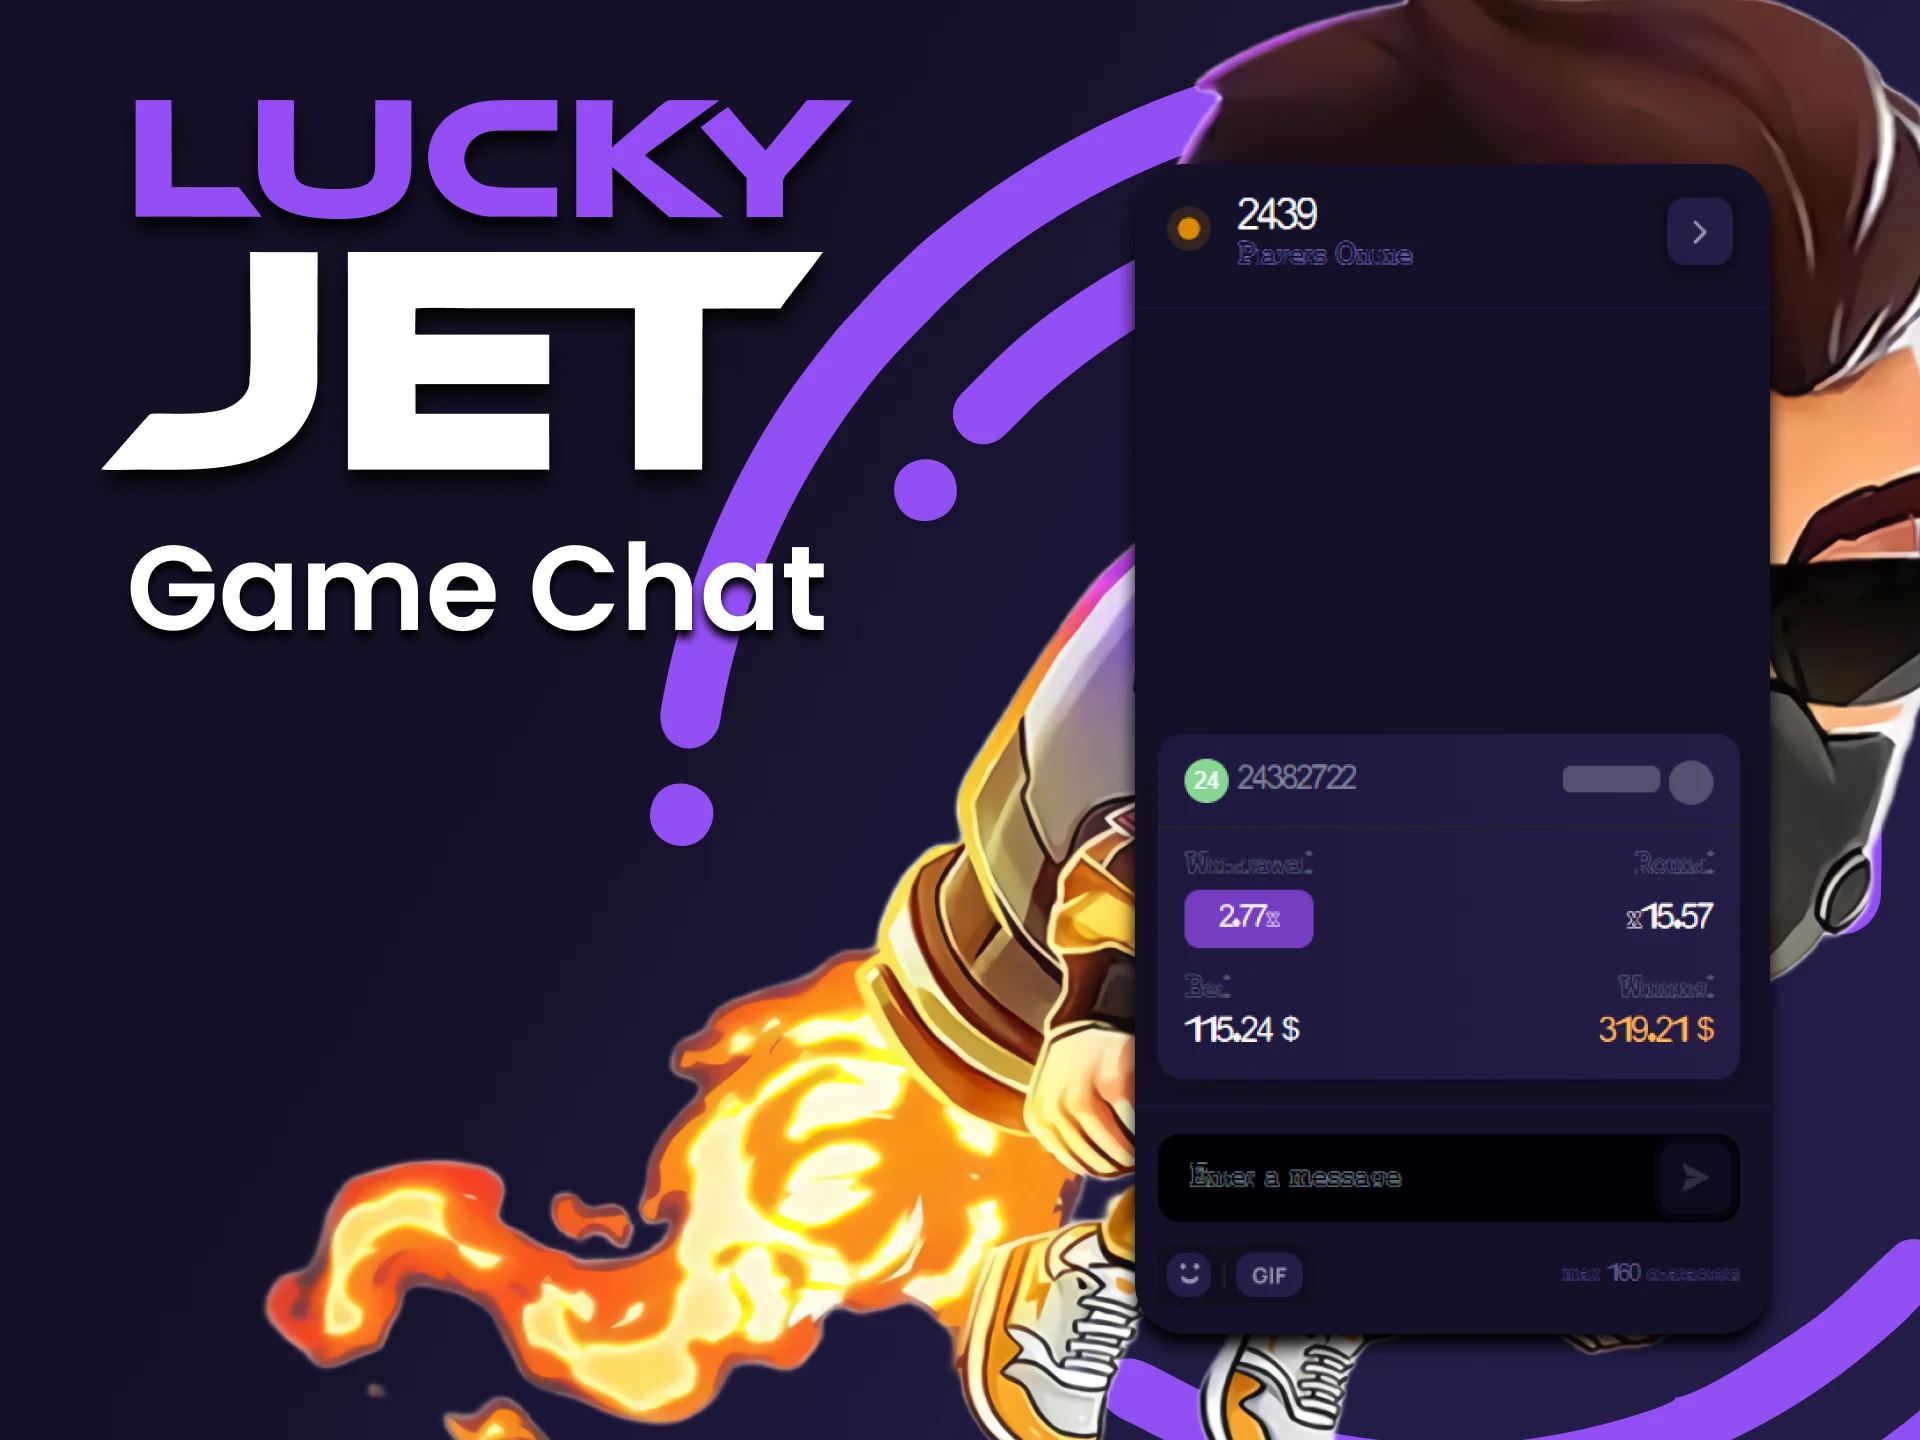 Conéctate con usuarios reales y comparte tus fichas y trucos cuando juegues a Lucky Jet.